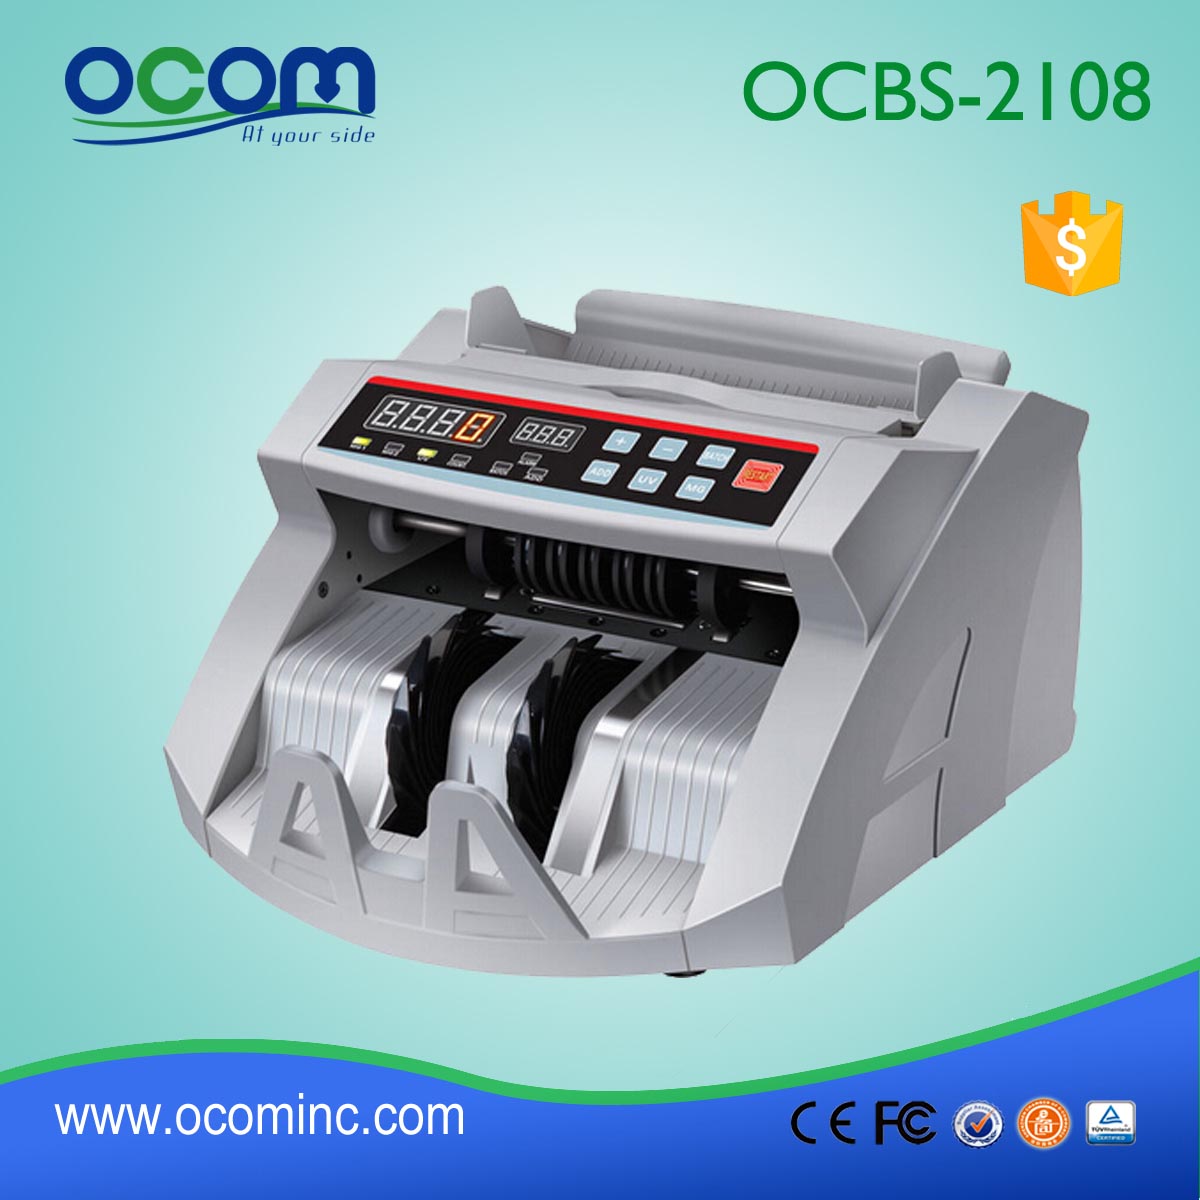 (OCBC-2108) - OCOM fatto 2016 ultimo contatore fattura automatica